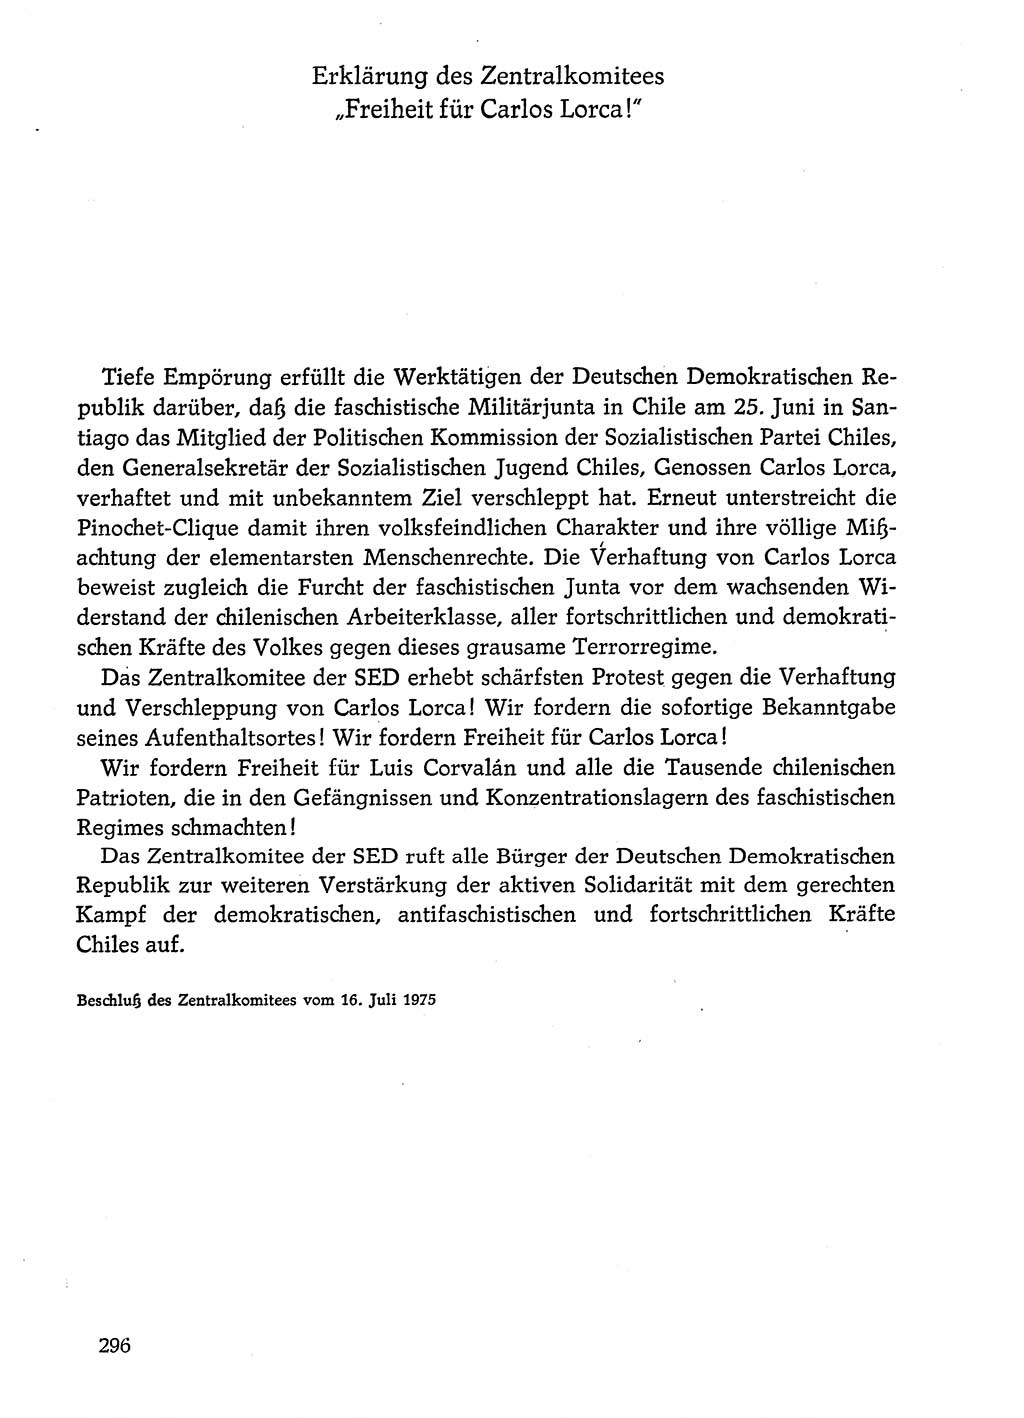 Dokumente der Sozialistischen Einheitspartei Deutschlands (SED) [Deutsche Demokratische Republik (DDR)] 1974-1975, Seite 296 (Dok. SED DDR 1978, Bd. ⅩⅤ, S. 296)